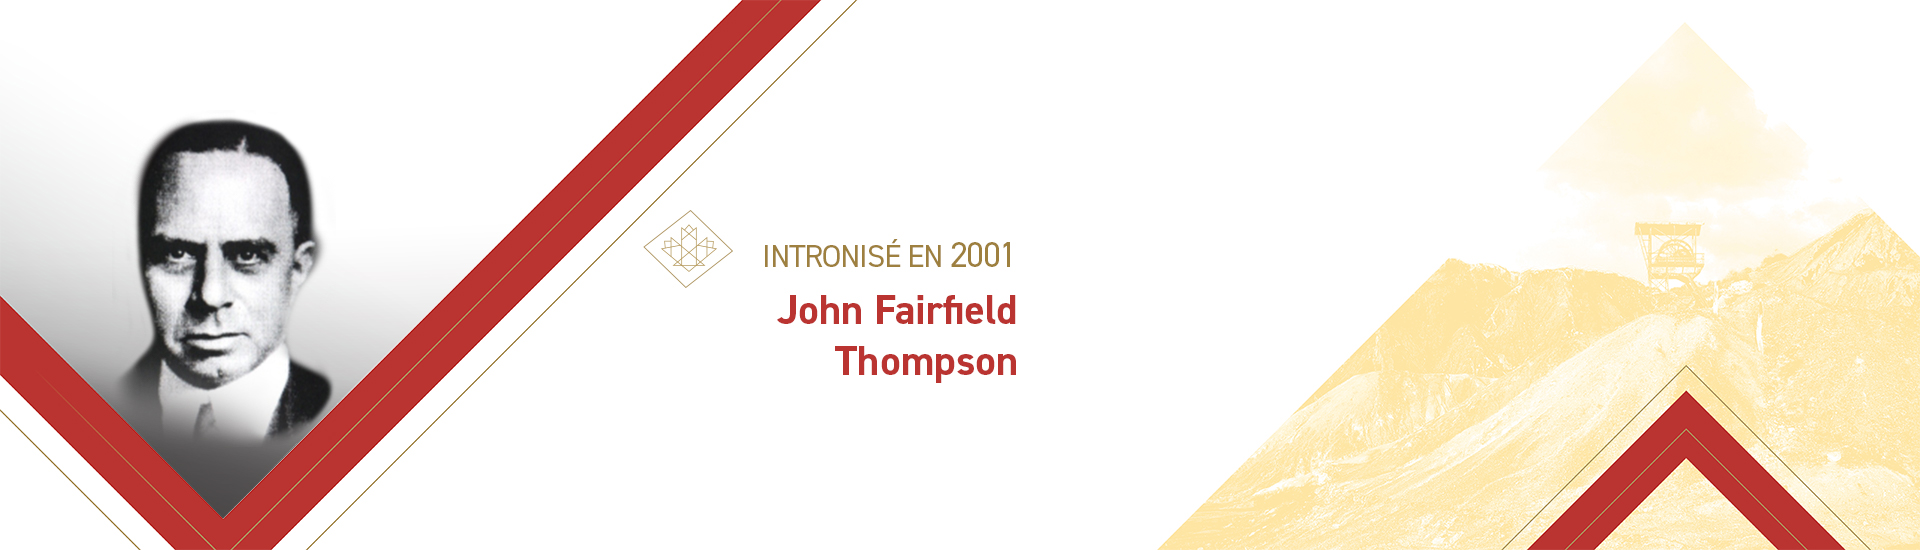 John Fairfield Thompson (1891-1968)